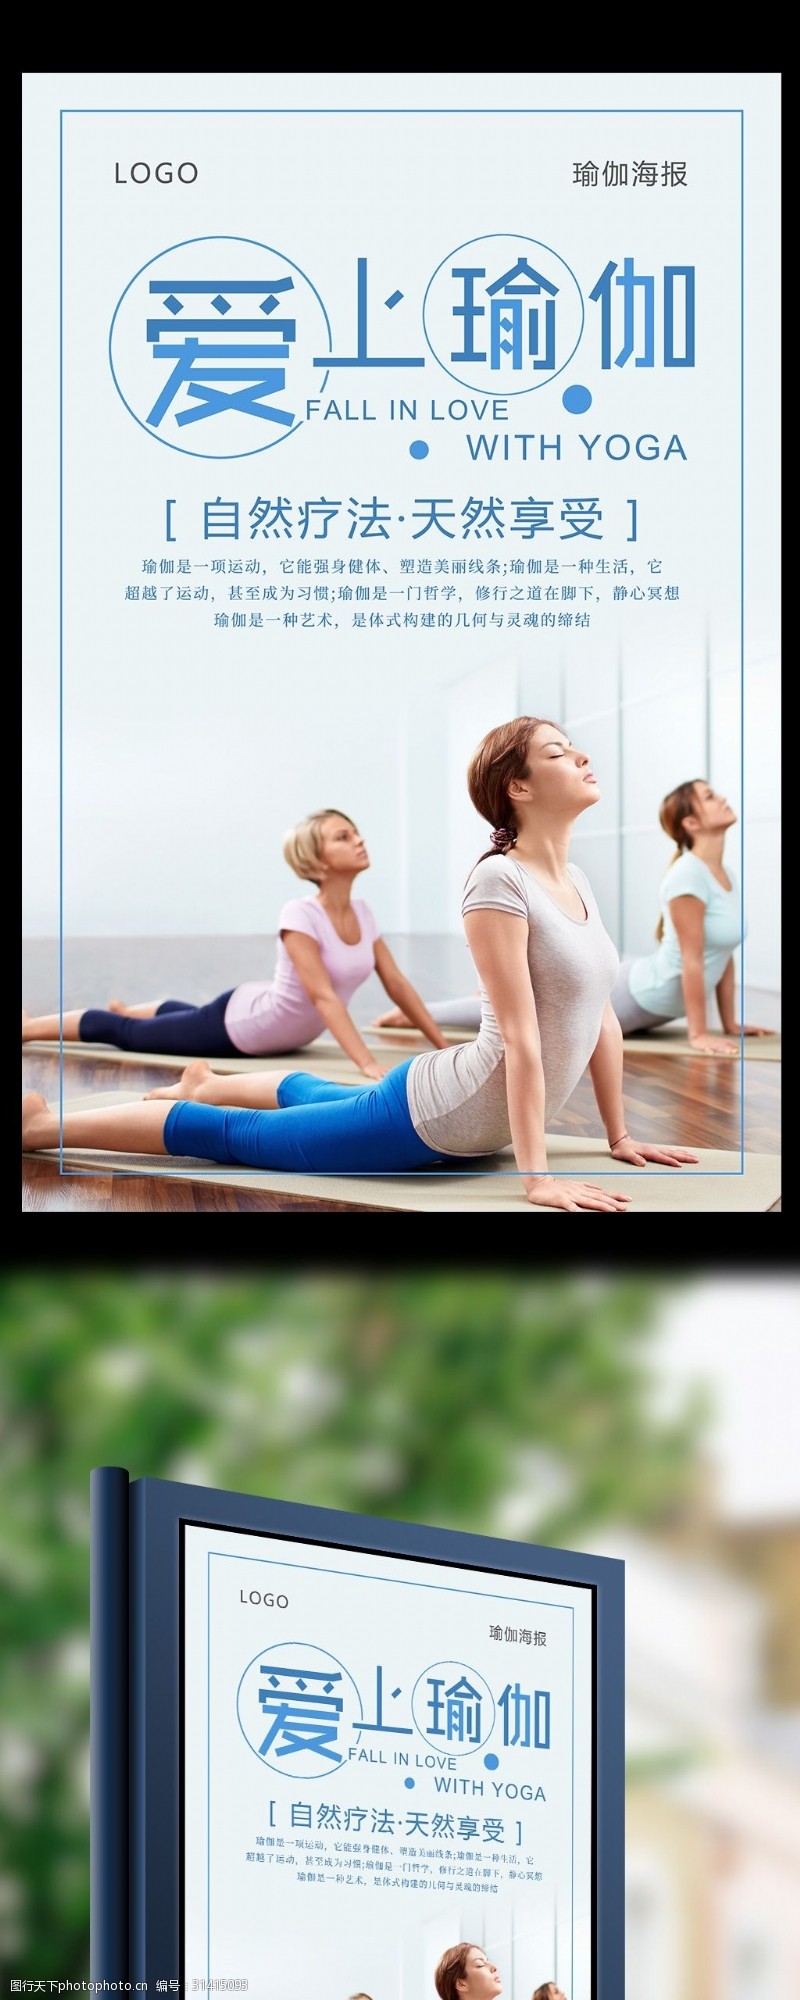 瑜伽中心简约爱上瑜伽体育运动海报设计